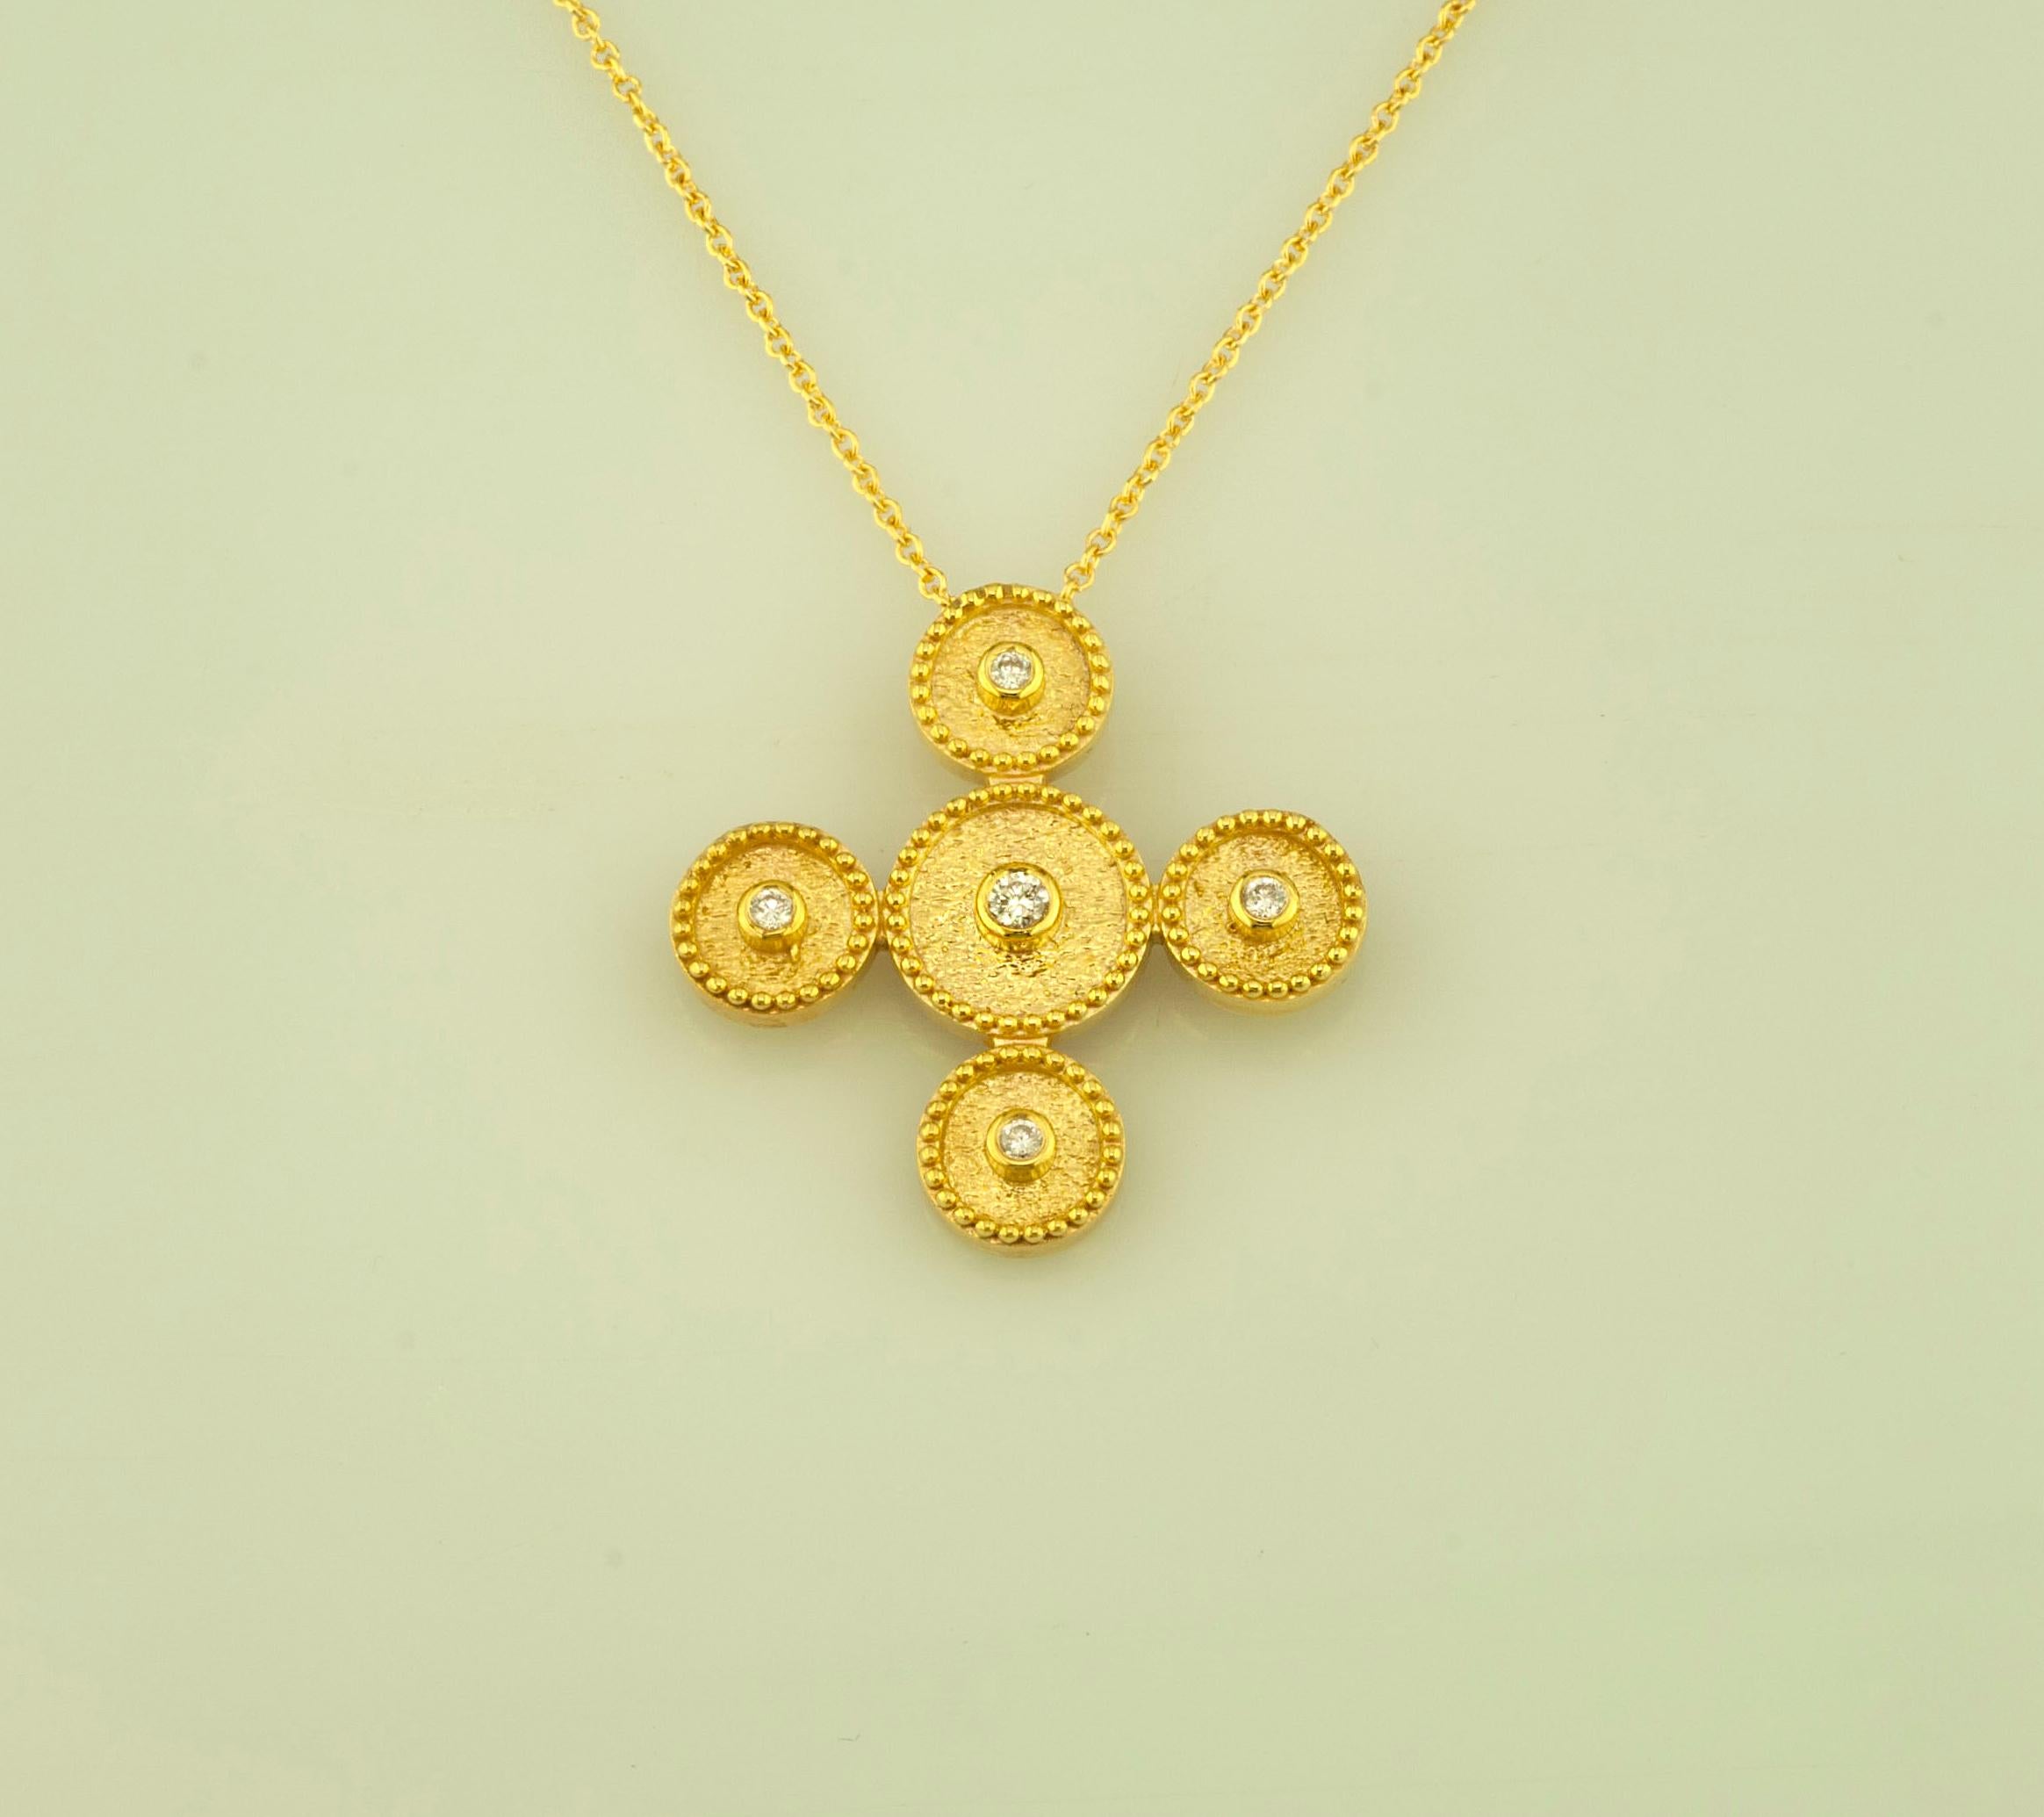 Diese S.Georgios Designer-Halskette mit Kreuzanhänger aus 18 Karat Gold und Kette ist handgefertigt mit mikroskopisch verzierter Granulierung im byzantinischen Stil und ist mit einem einzigartigen Samt-Hintergrund versehen. Dieses wunderschöne Kreuz